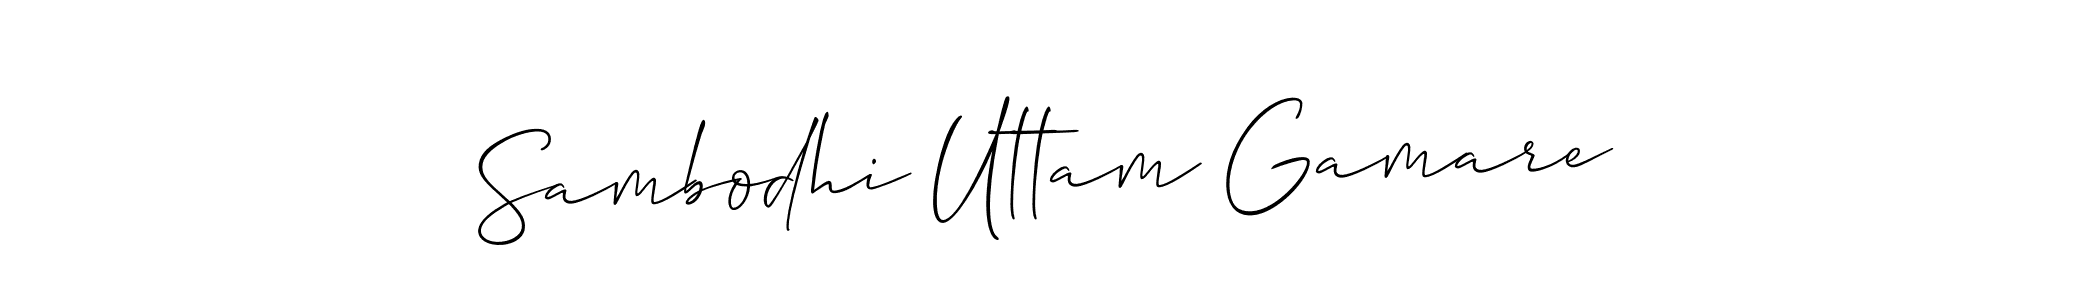 How to Draw Sambodhi Uttam Gamare signature style? Allison_Script is a latest design signature styles for name Sambodhi Uttam Gamare. Sambodhi Uttam Gamare signature style 2 images and pictures png